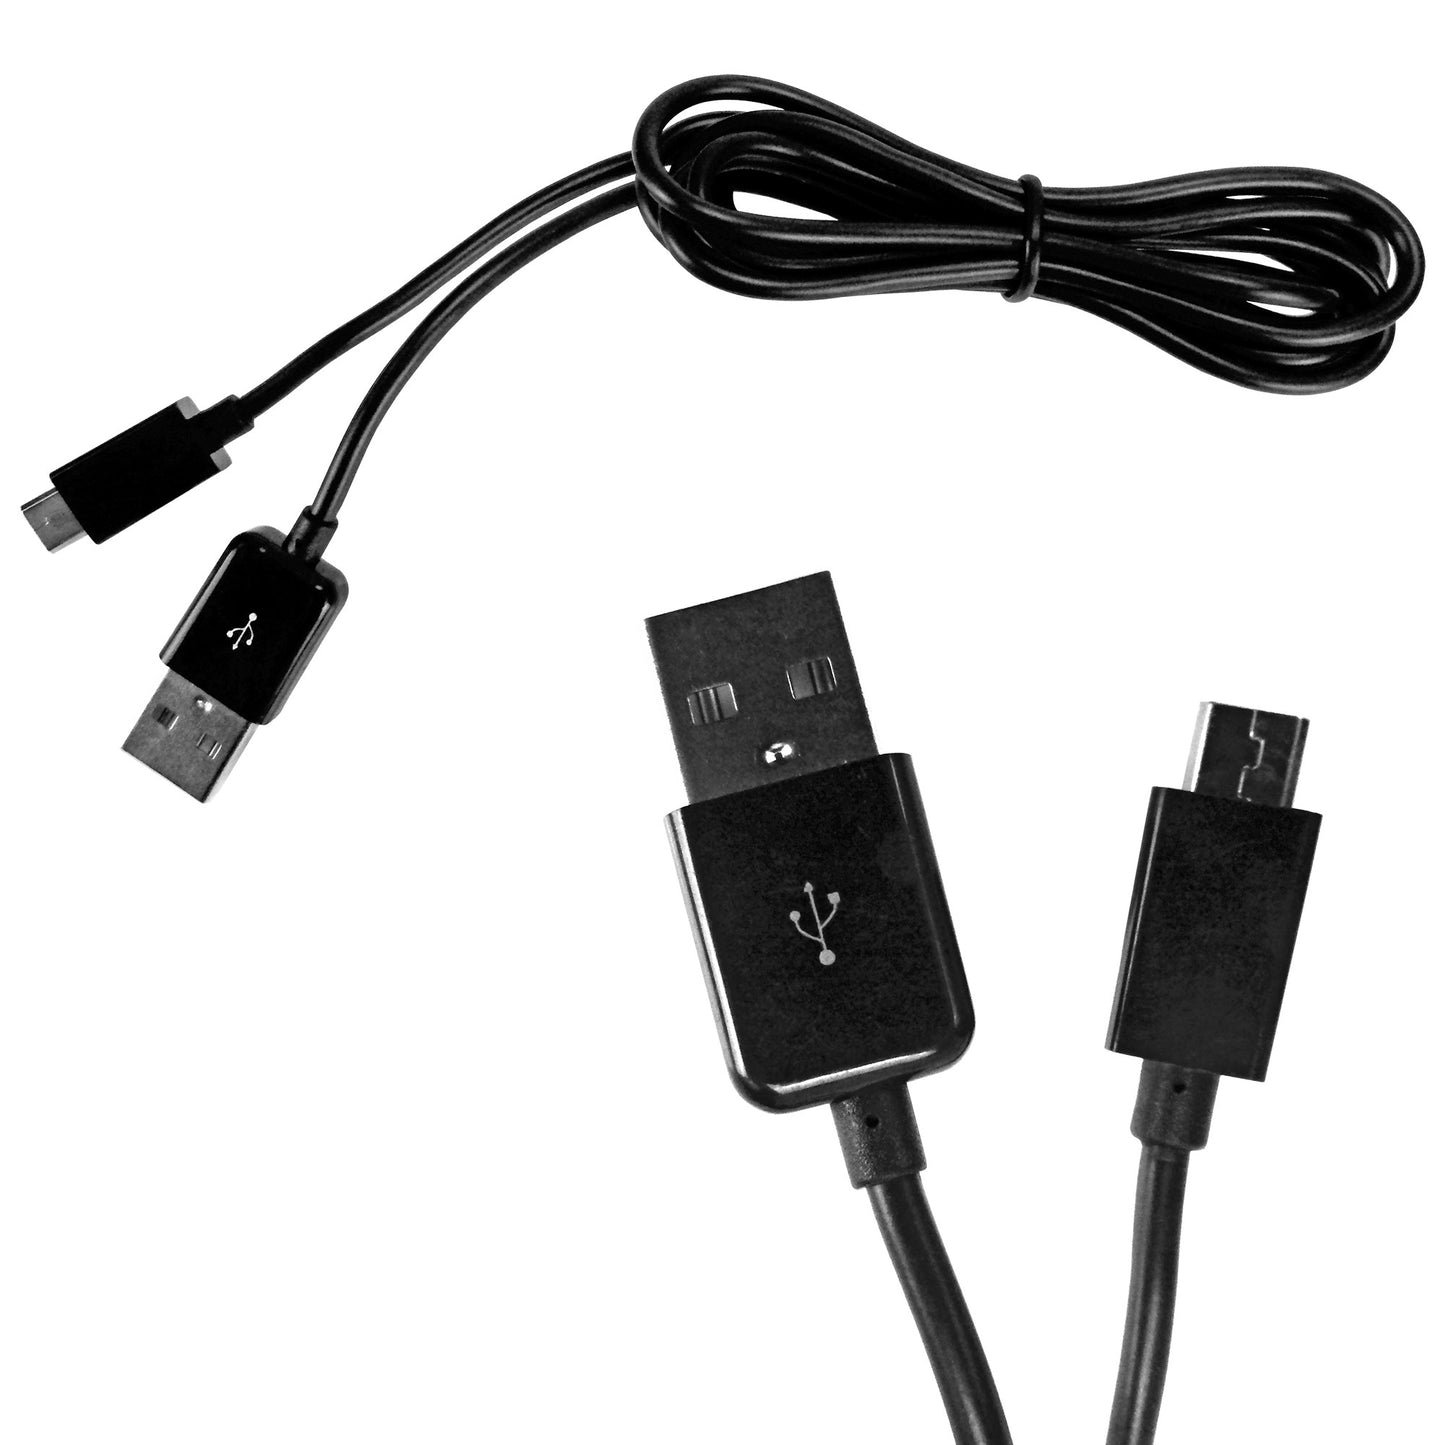 USB Datenkabel / Ladekabel mit microUSB und USB Typ A Anschlüsse